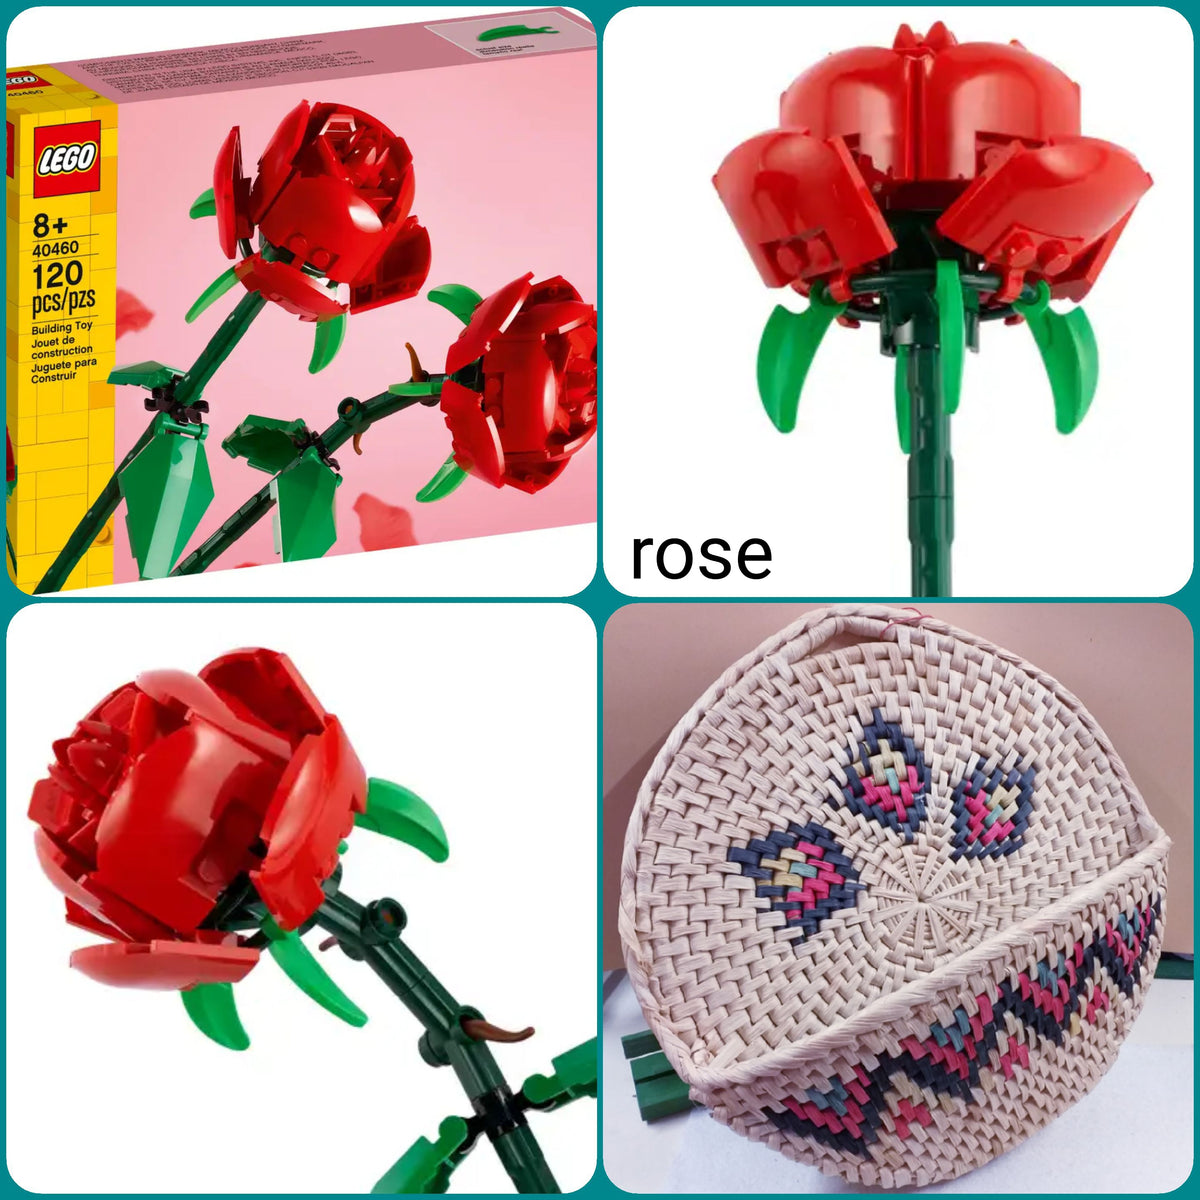 Rose, girasoli, fiori di loto kit costruzioni fiori mattoncini Lego –  hobbyshopbomboniere